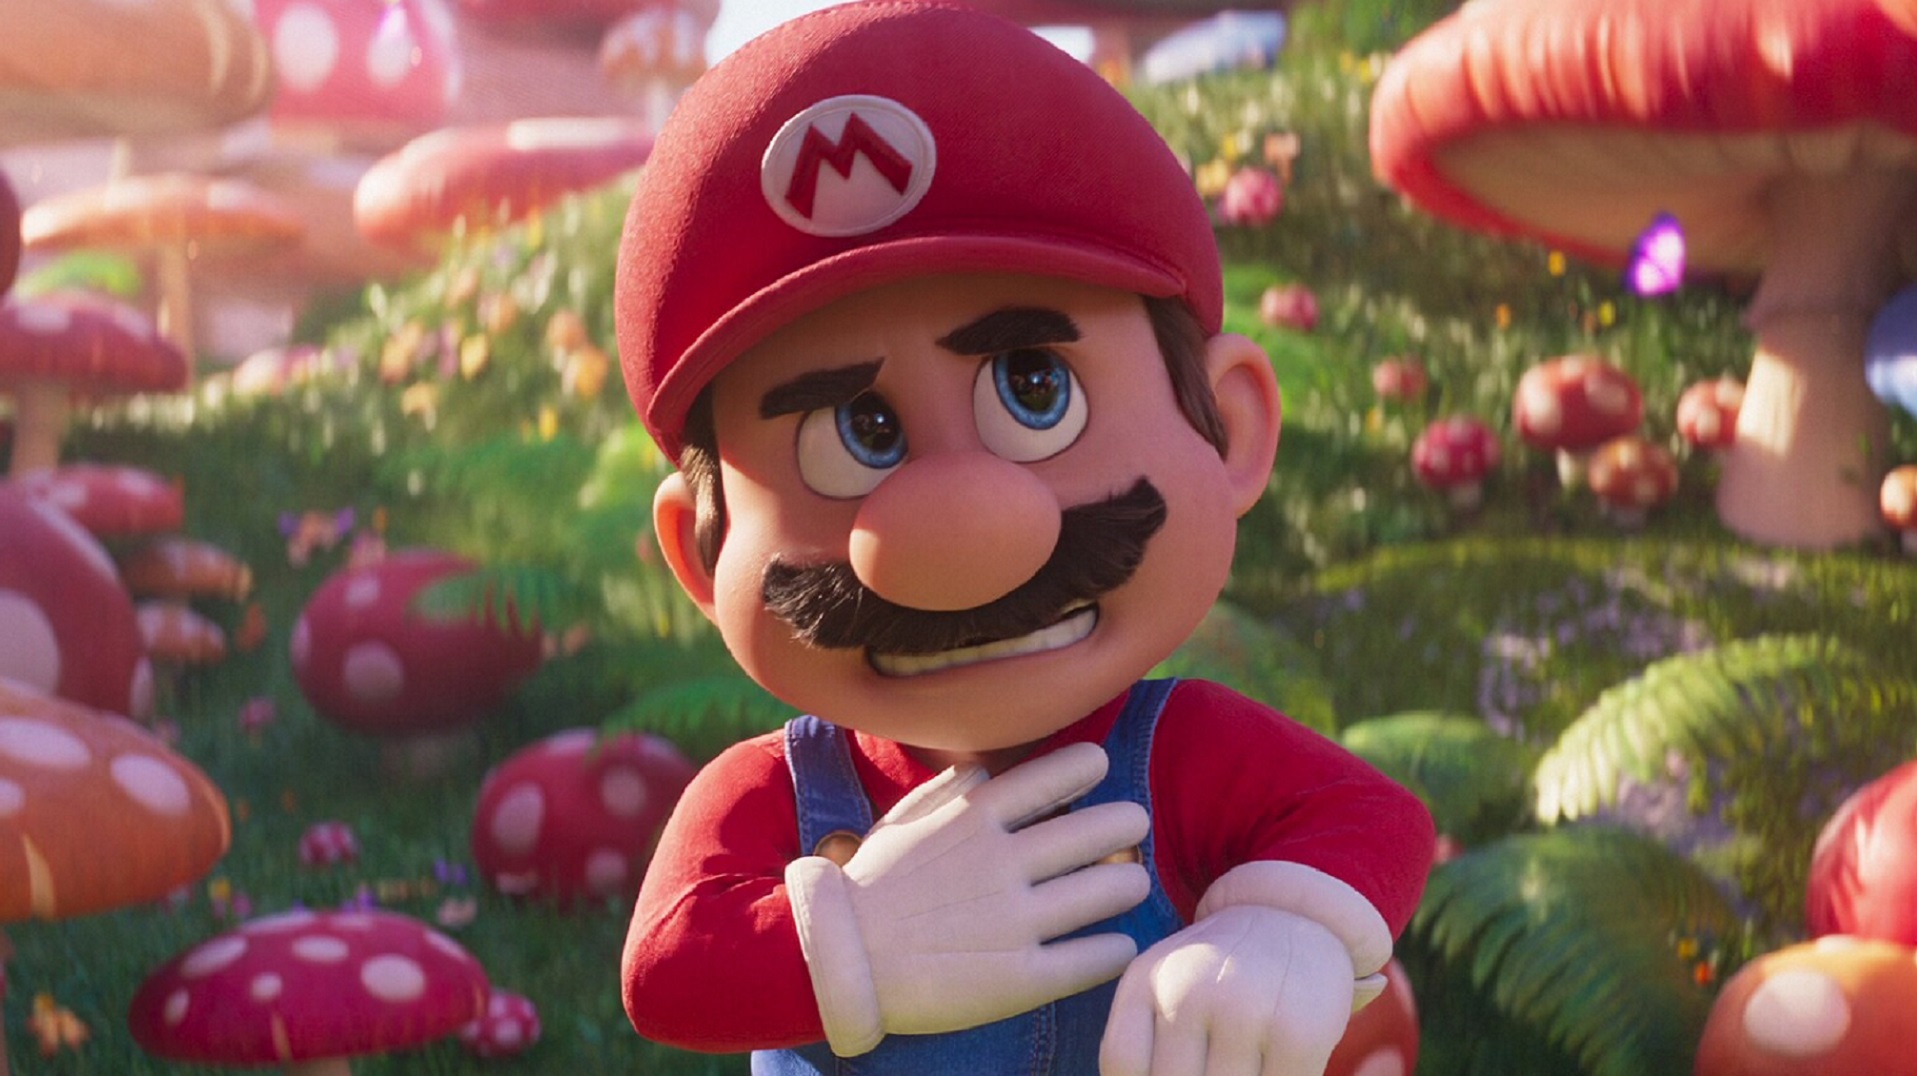 Мультфильм «Марио» собрал 377 млн долларов в мировом прокате спустя пять дней после премьеры